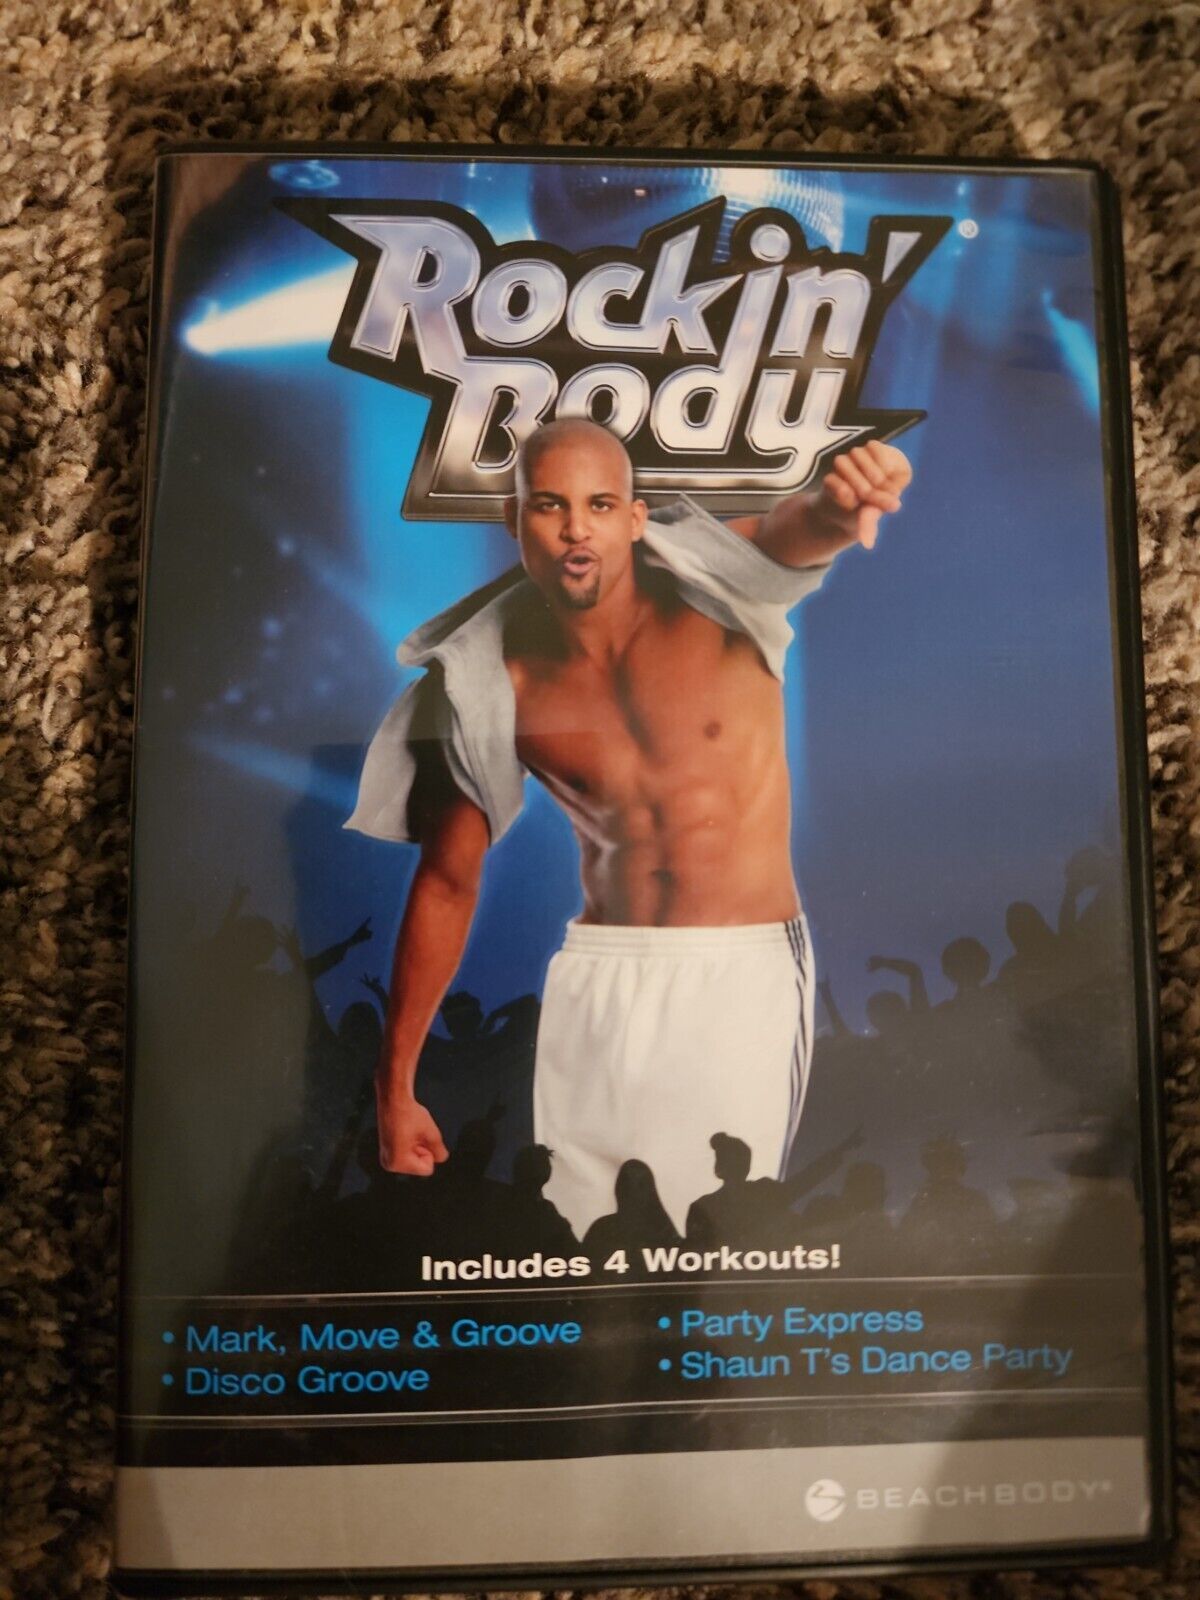 Rockin' body 4 workouts - 2013 - Beachbody - Shaun T. - Music & Movement - $3.40